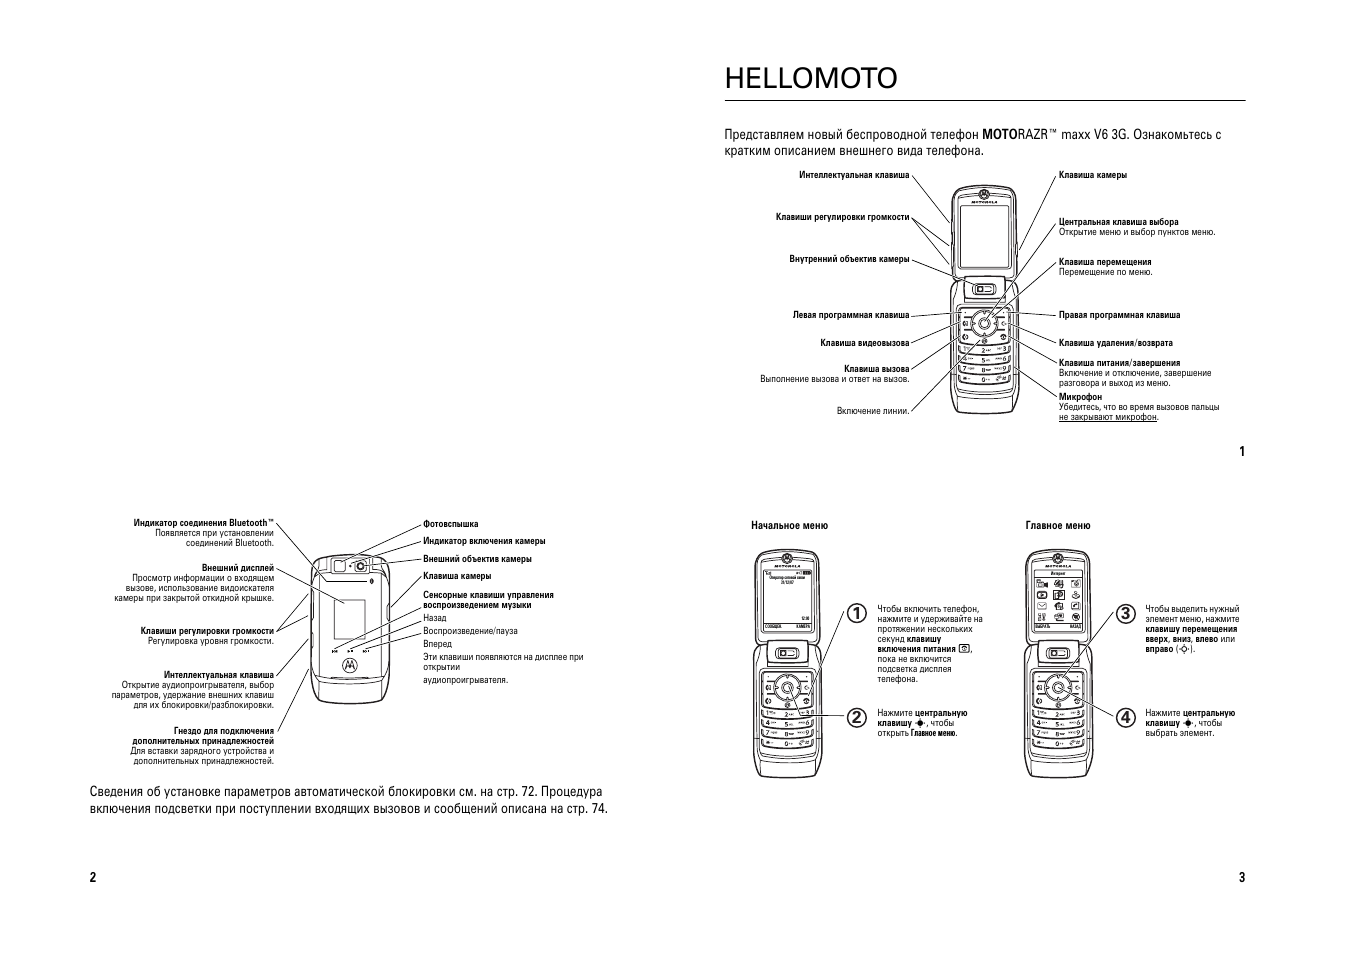 Инструкция по эксплуатации Motorola RAZR V6 3G | 41 cтраница